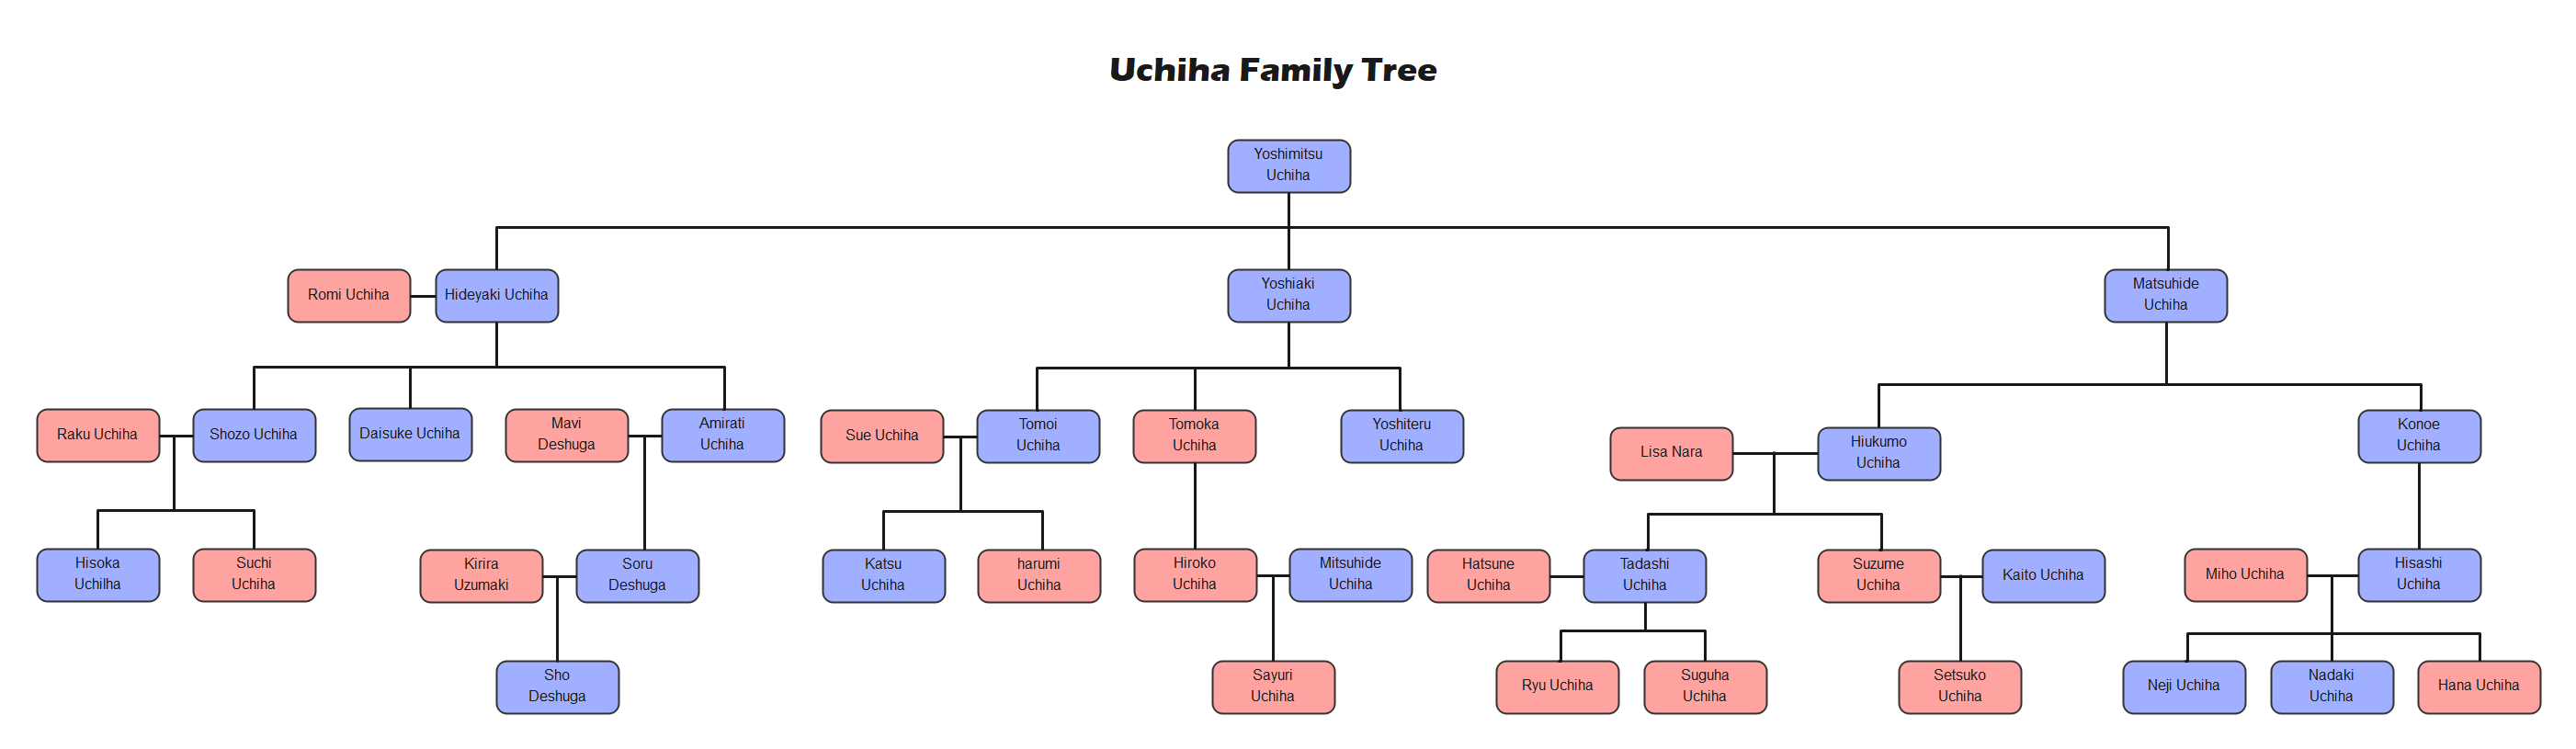 Uchiha Family Tree